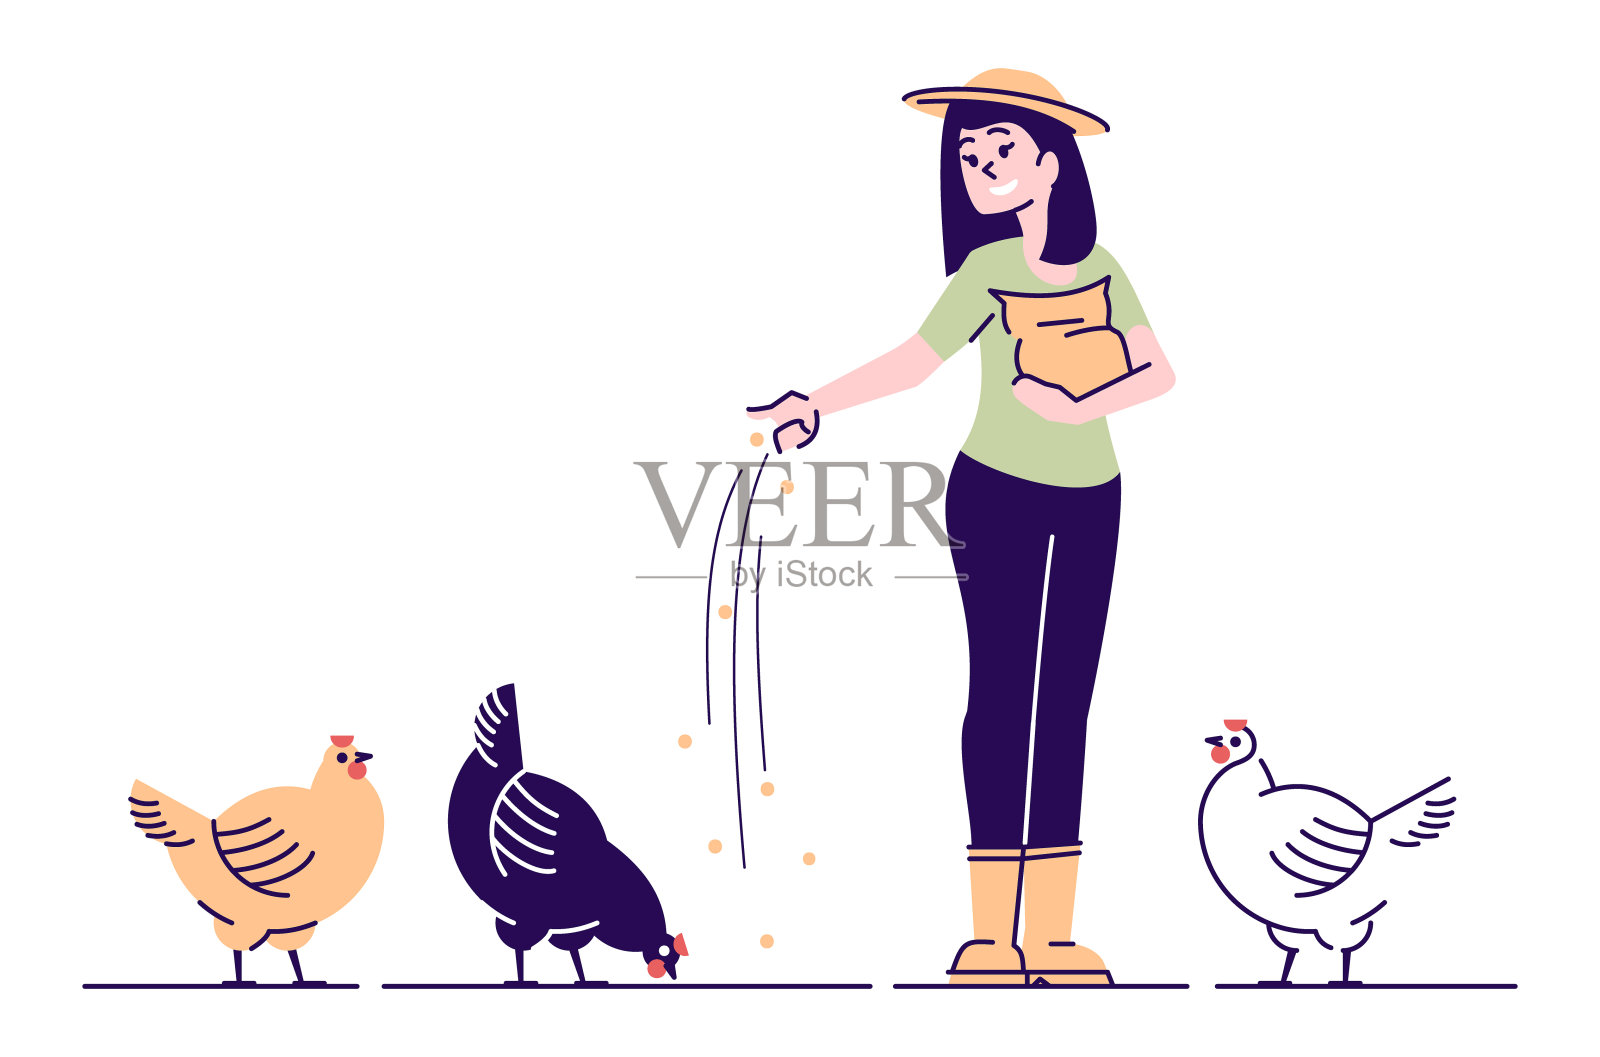 养殖户饲养的鸡呈扁平病特征。家禽后院农场卡通概念与大纲。用谷物喂鸡的农村妇女。家禽养殖、养鸡场、有机禽鸟农业插画图片素材